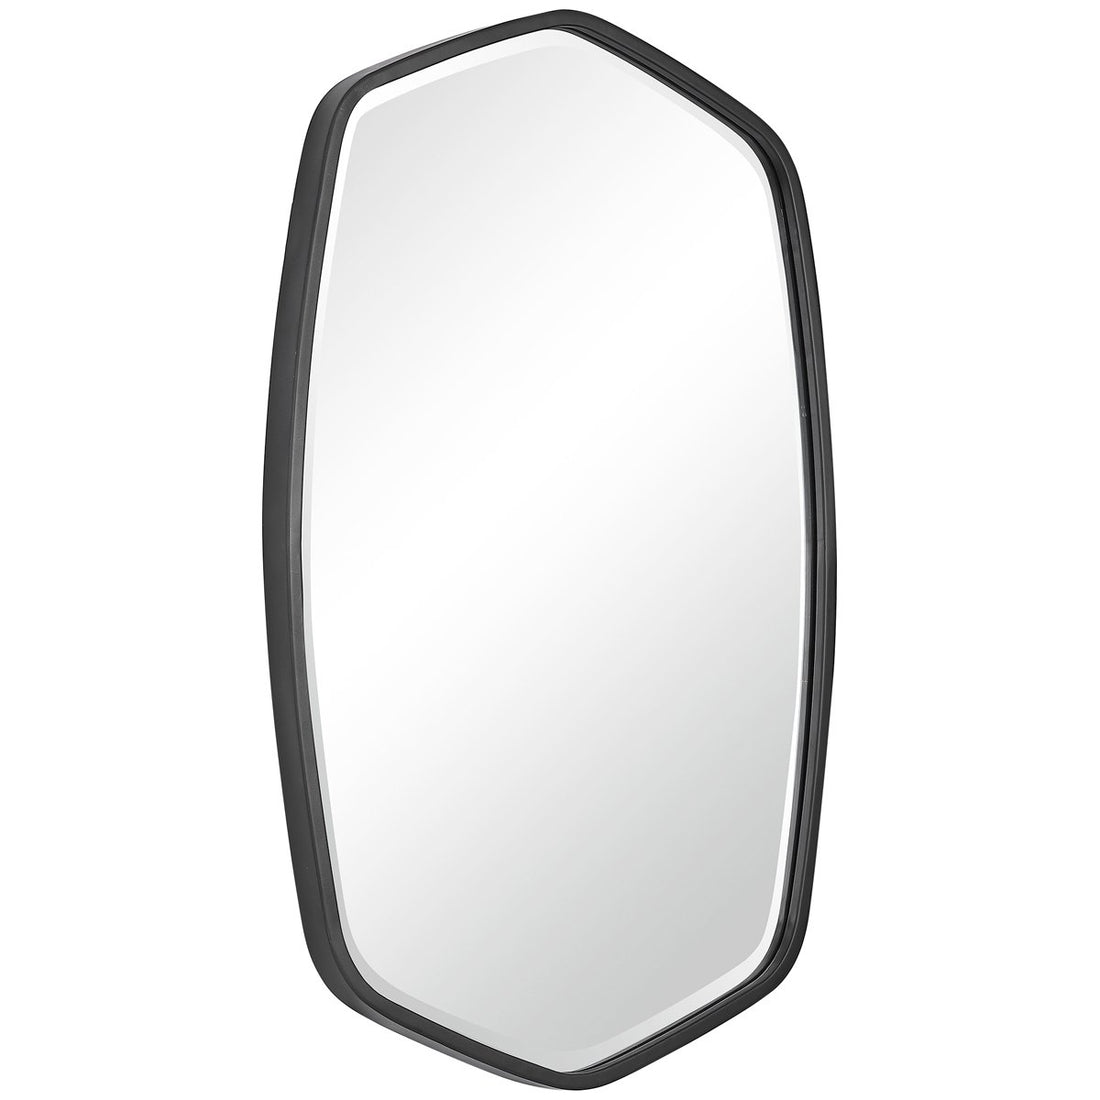 Uttermost Duronia Mirror